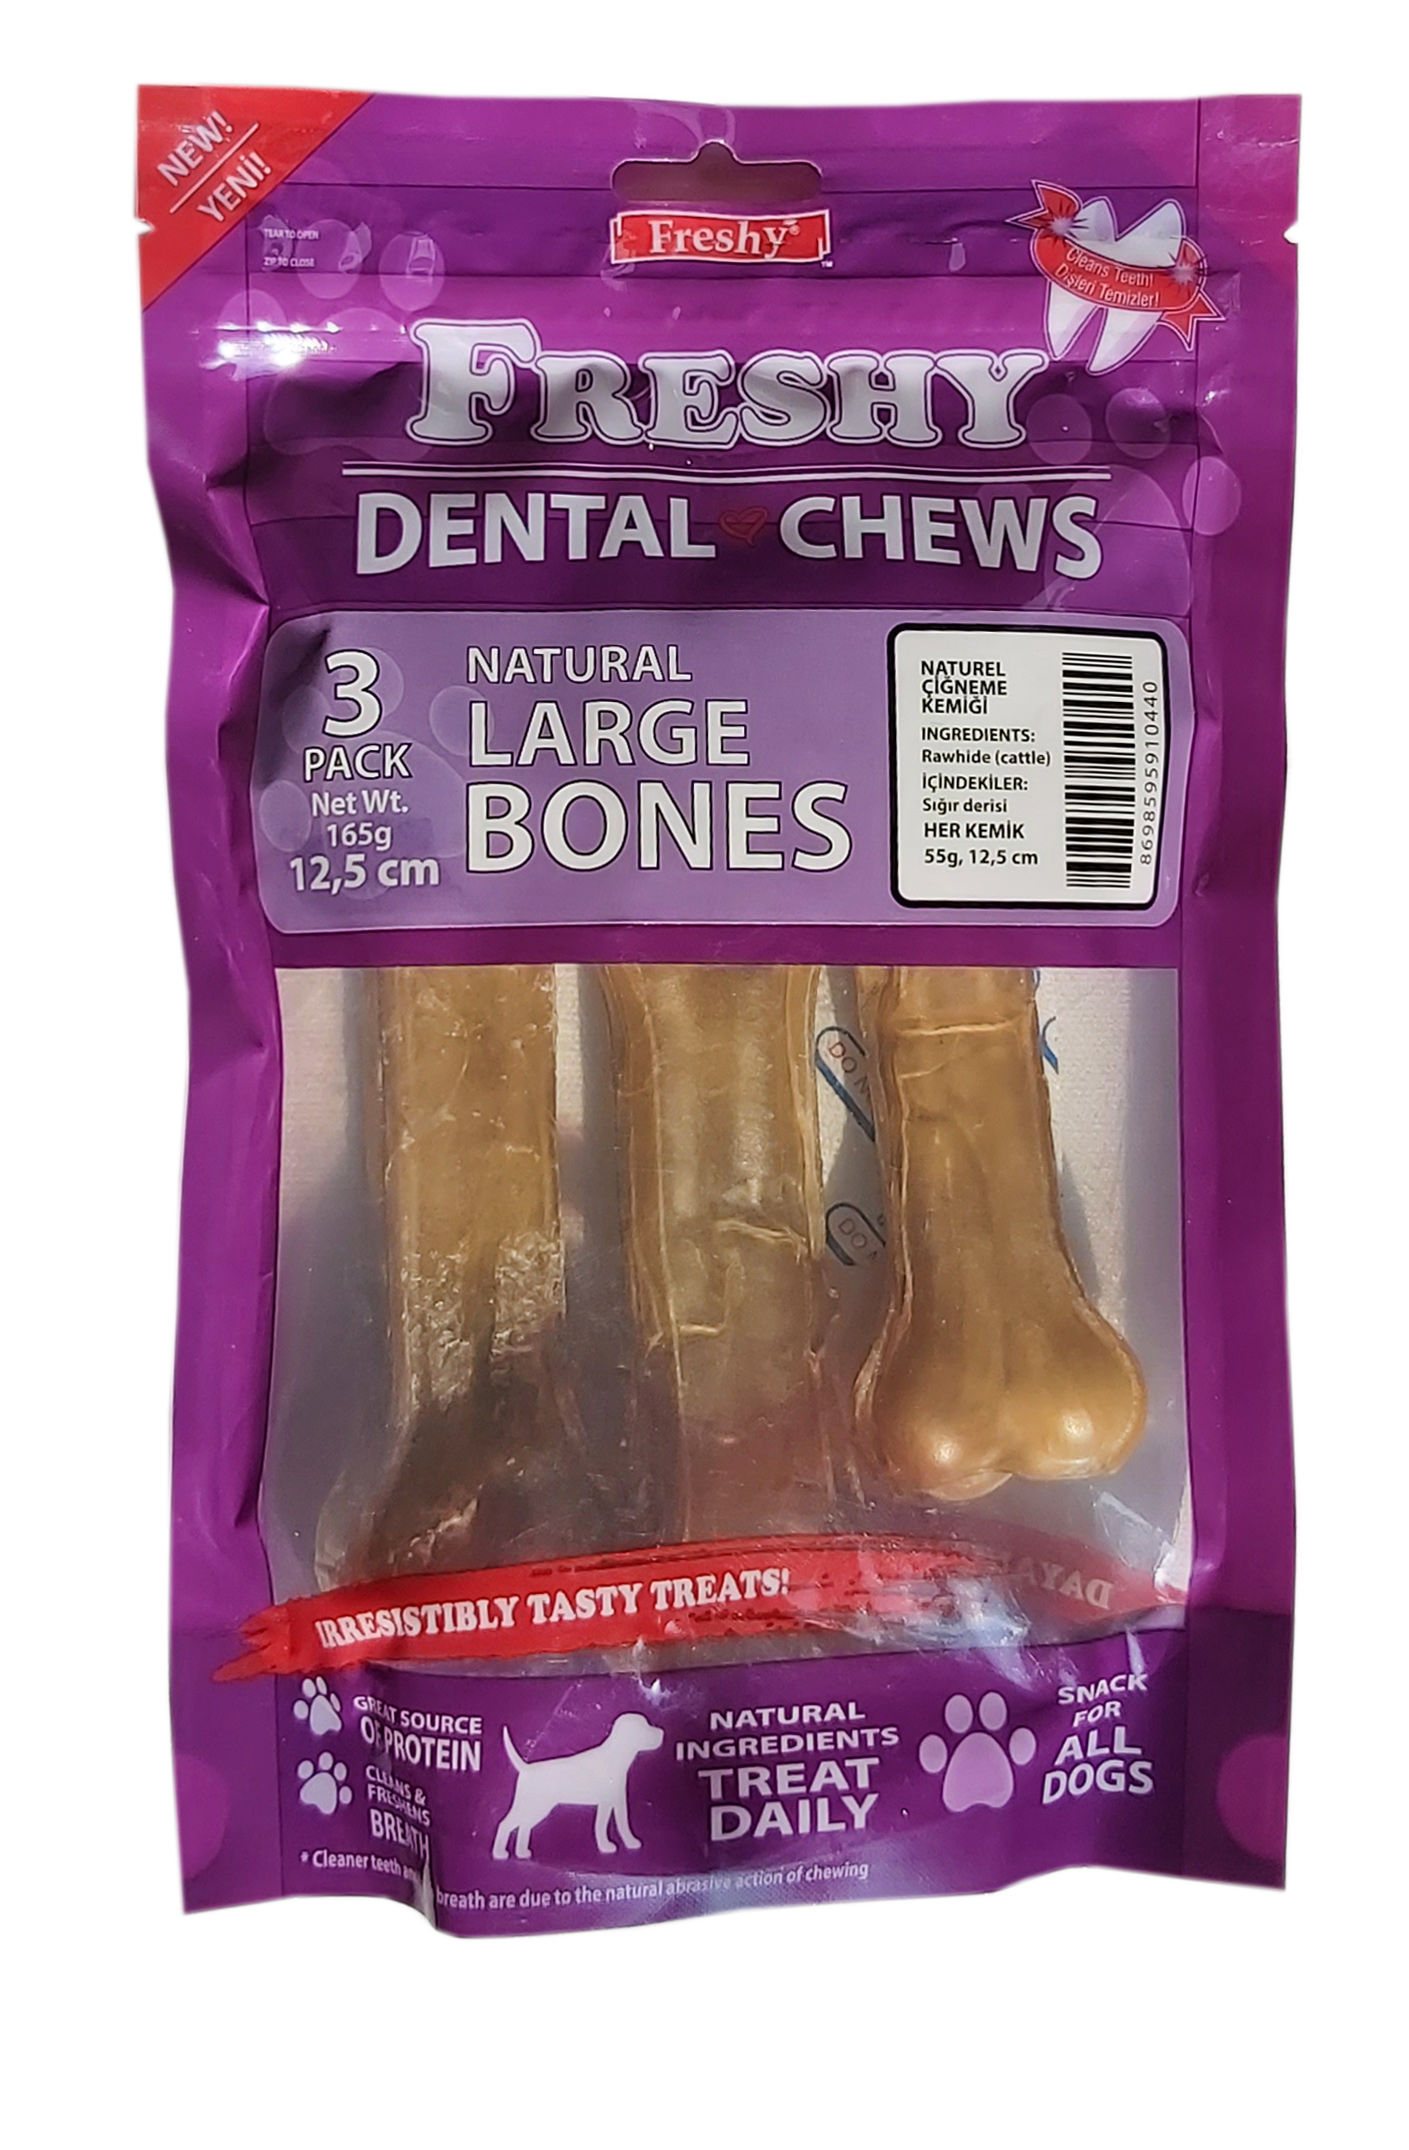 Freshy Büyük Boy Natürel Dental Kemik 12,5 santim 3'lü Paket Toplam 165 Gram